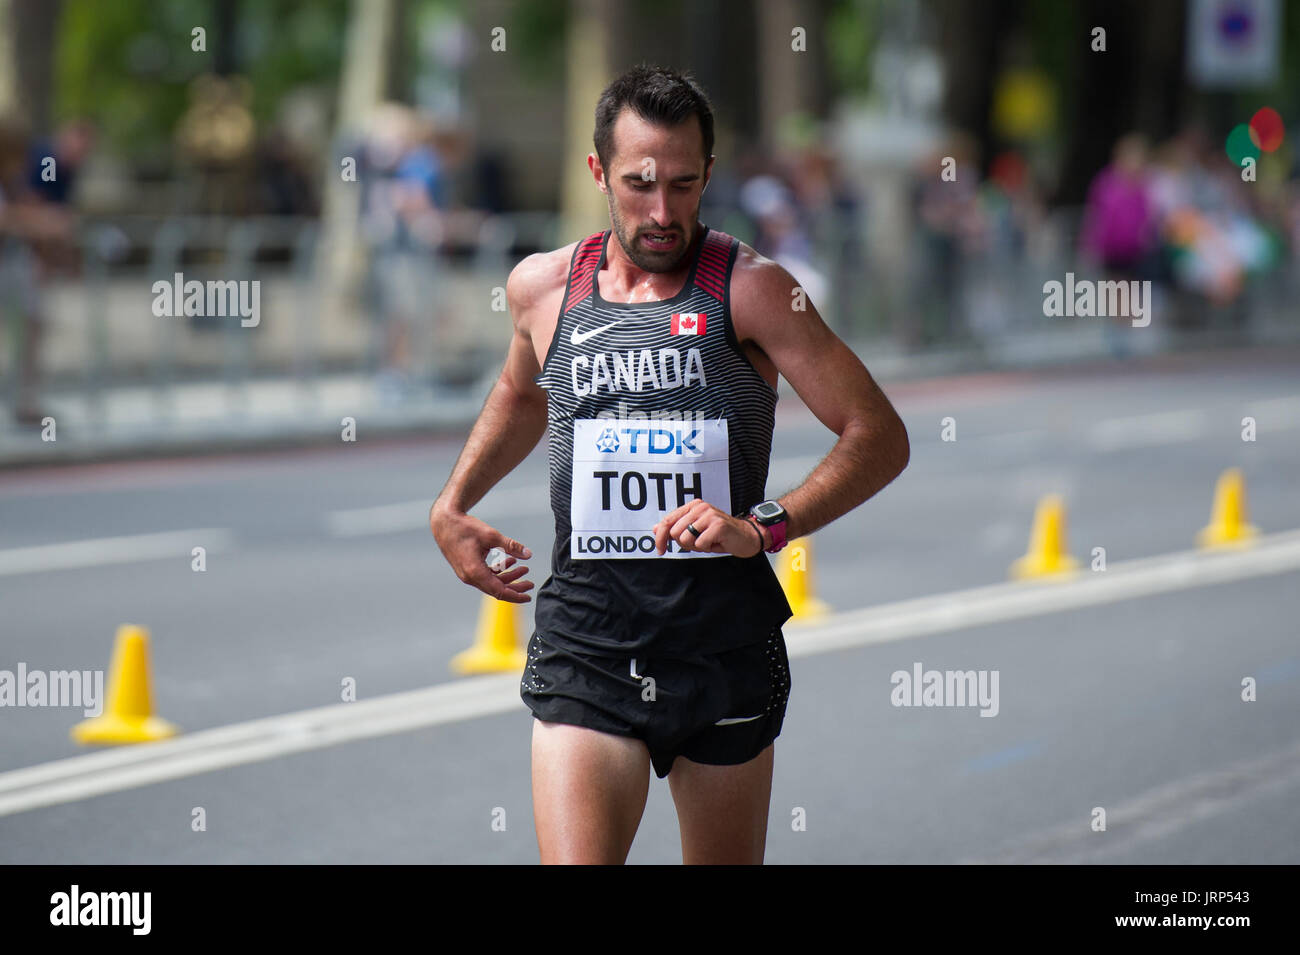 Londres, Royaume-Uni. 6 Août, 2017. Thomas Toth (Canada) à l'IAAF World Athletics Championships Men's Marathon Race Crédit : Phil Swallow Photography/Alamy Live News Banque D'Images